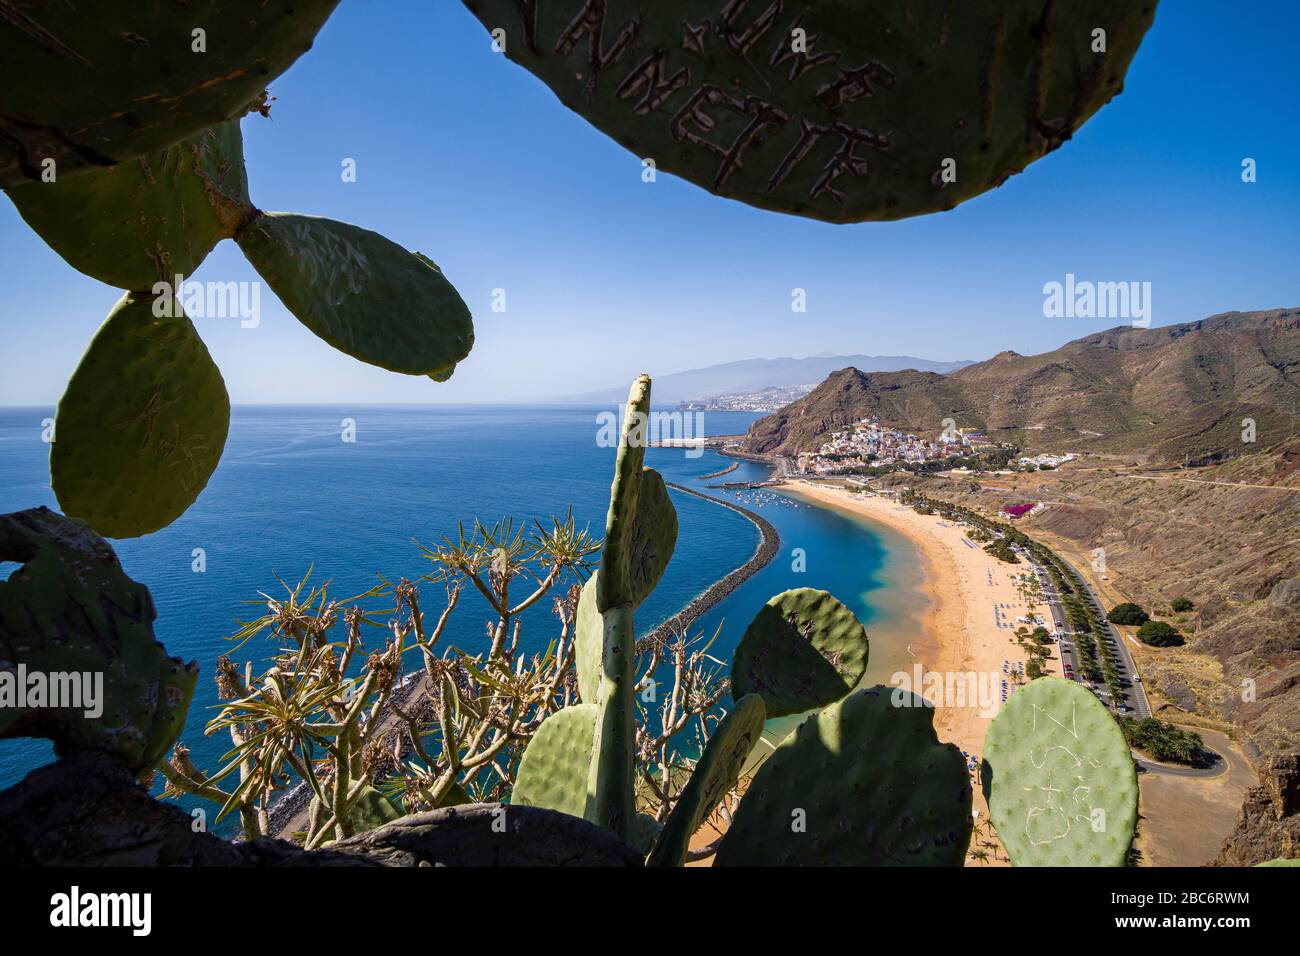 Vista aérea sobre la playa de arena blanca artificial de las Teresitas y las coloridas casas de San Andrés Foto de stock